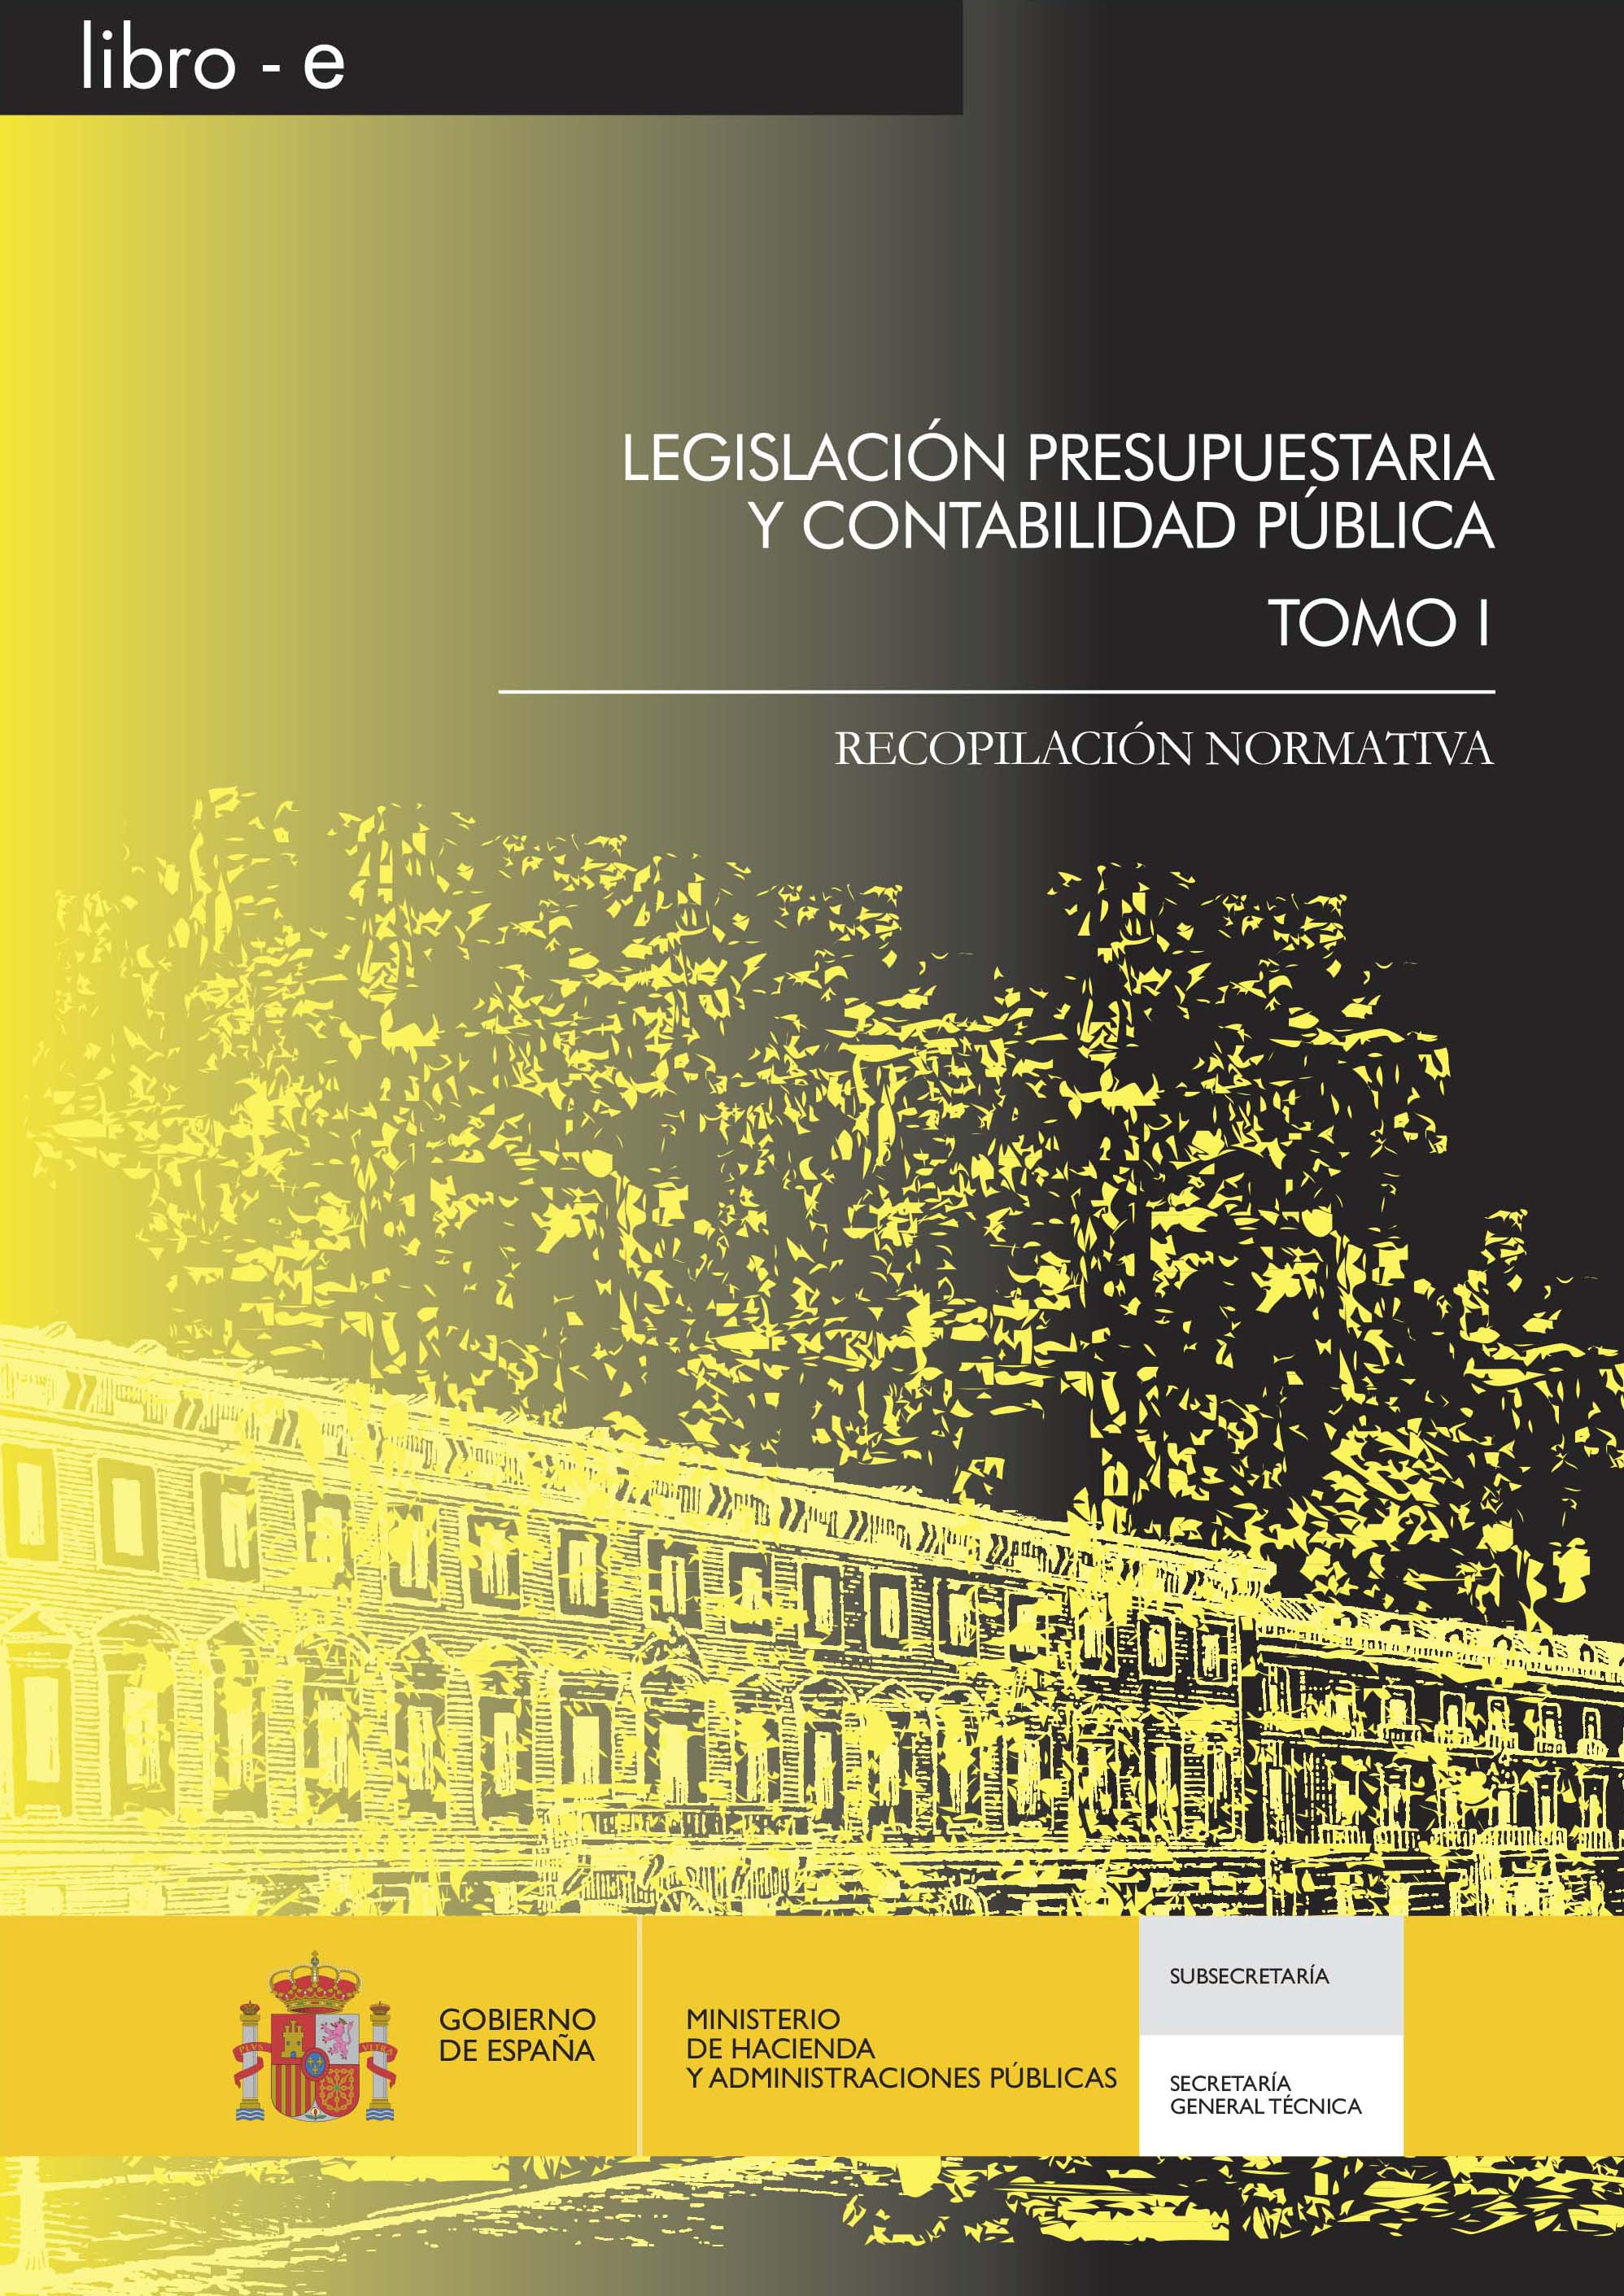 Portada del libro: LEGISLACION PRESUPUESTARIA Y CONTABILIDAD PUBLICA. RECOPILACION NORMATIVA. TOMO I Libro-e